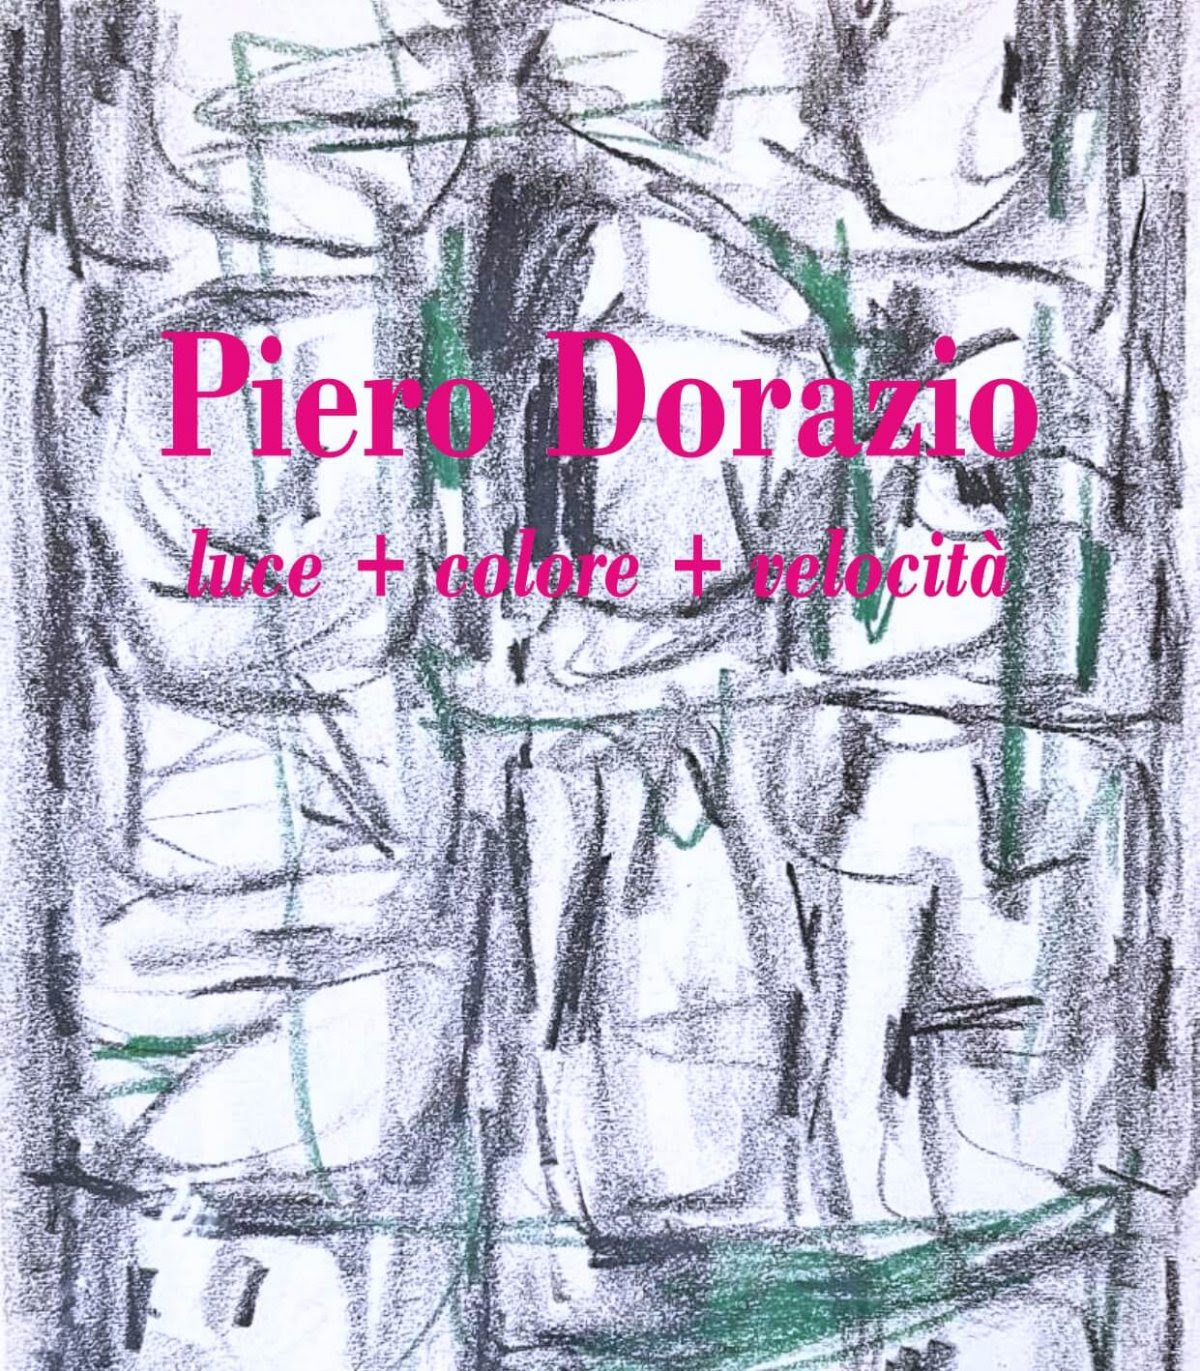 Piero Dorazio - Luce + Colore + Velocità